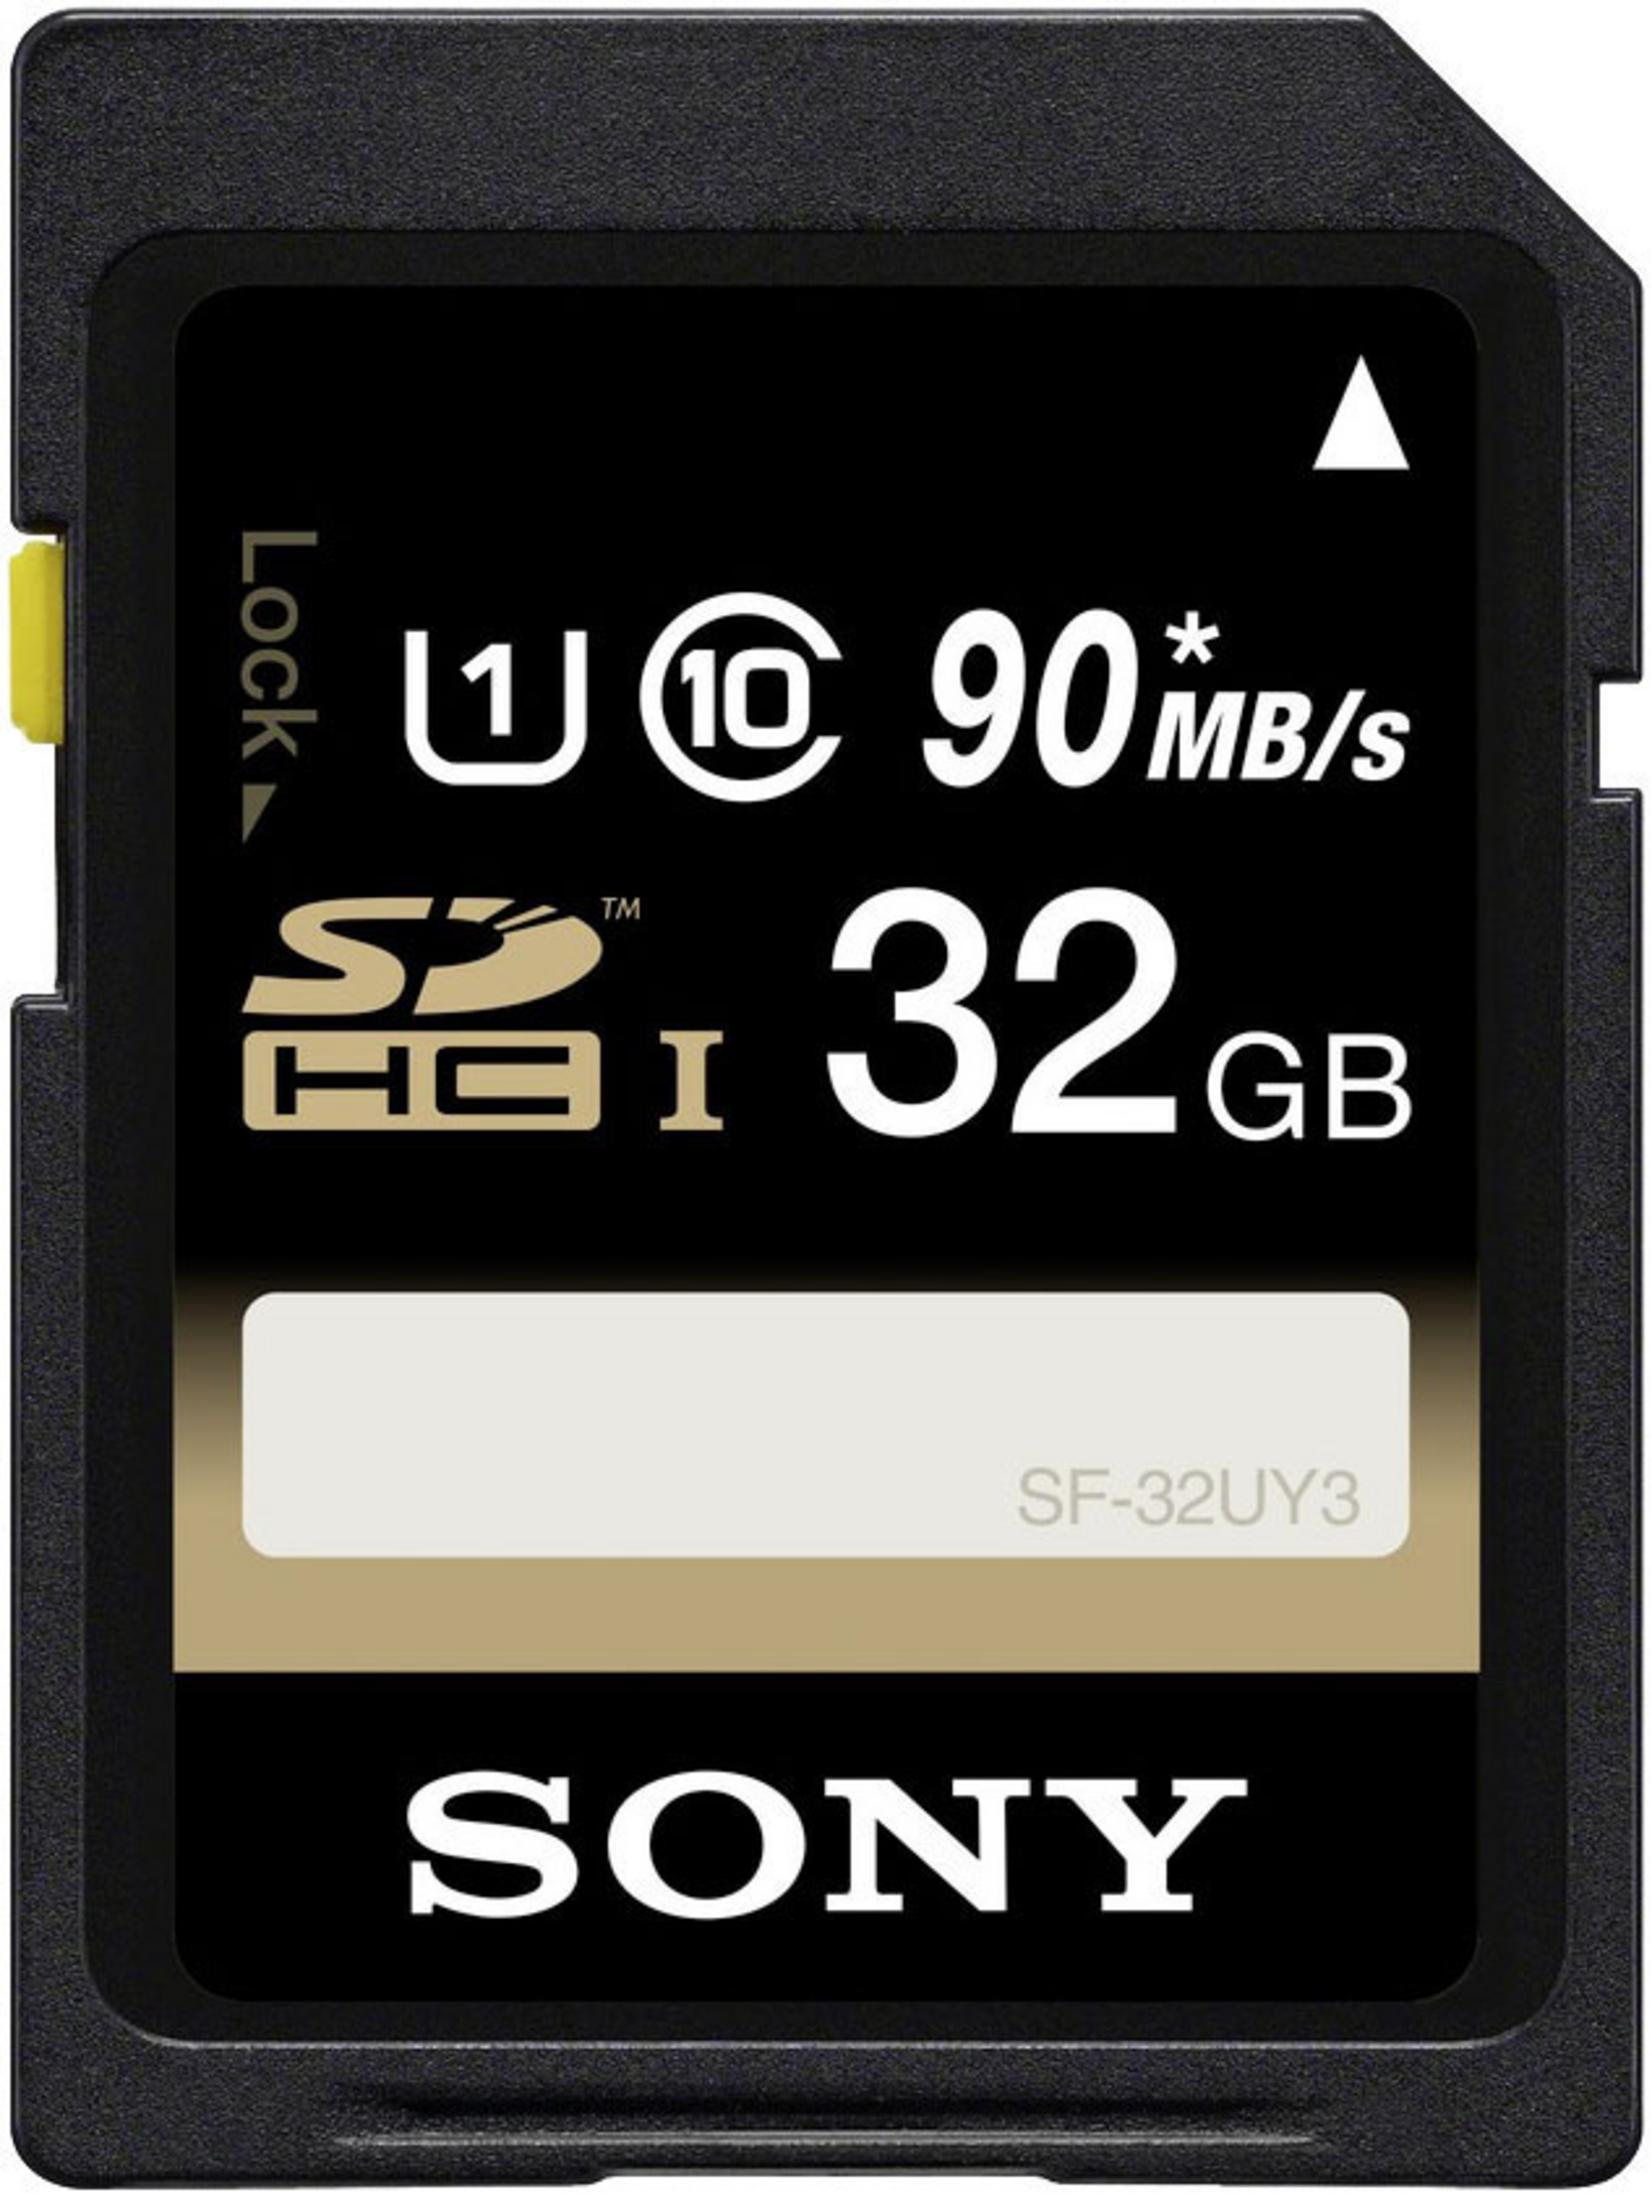 32 32U, MB/s SDHC Speicherkarte, GB, SONY SF 90